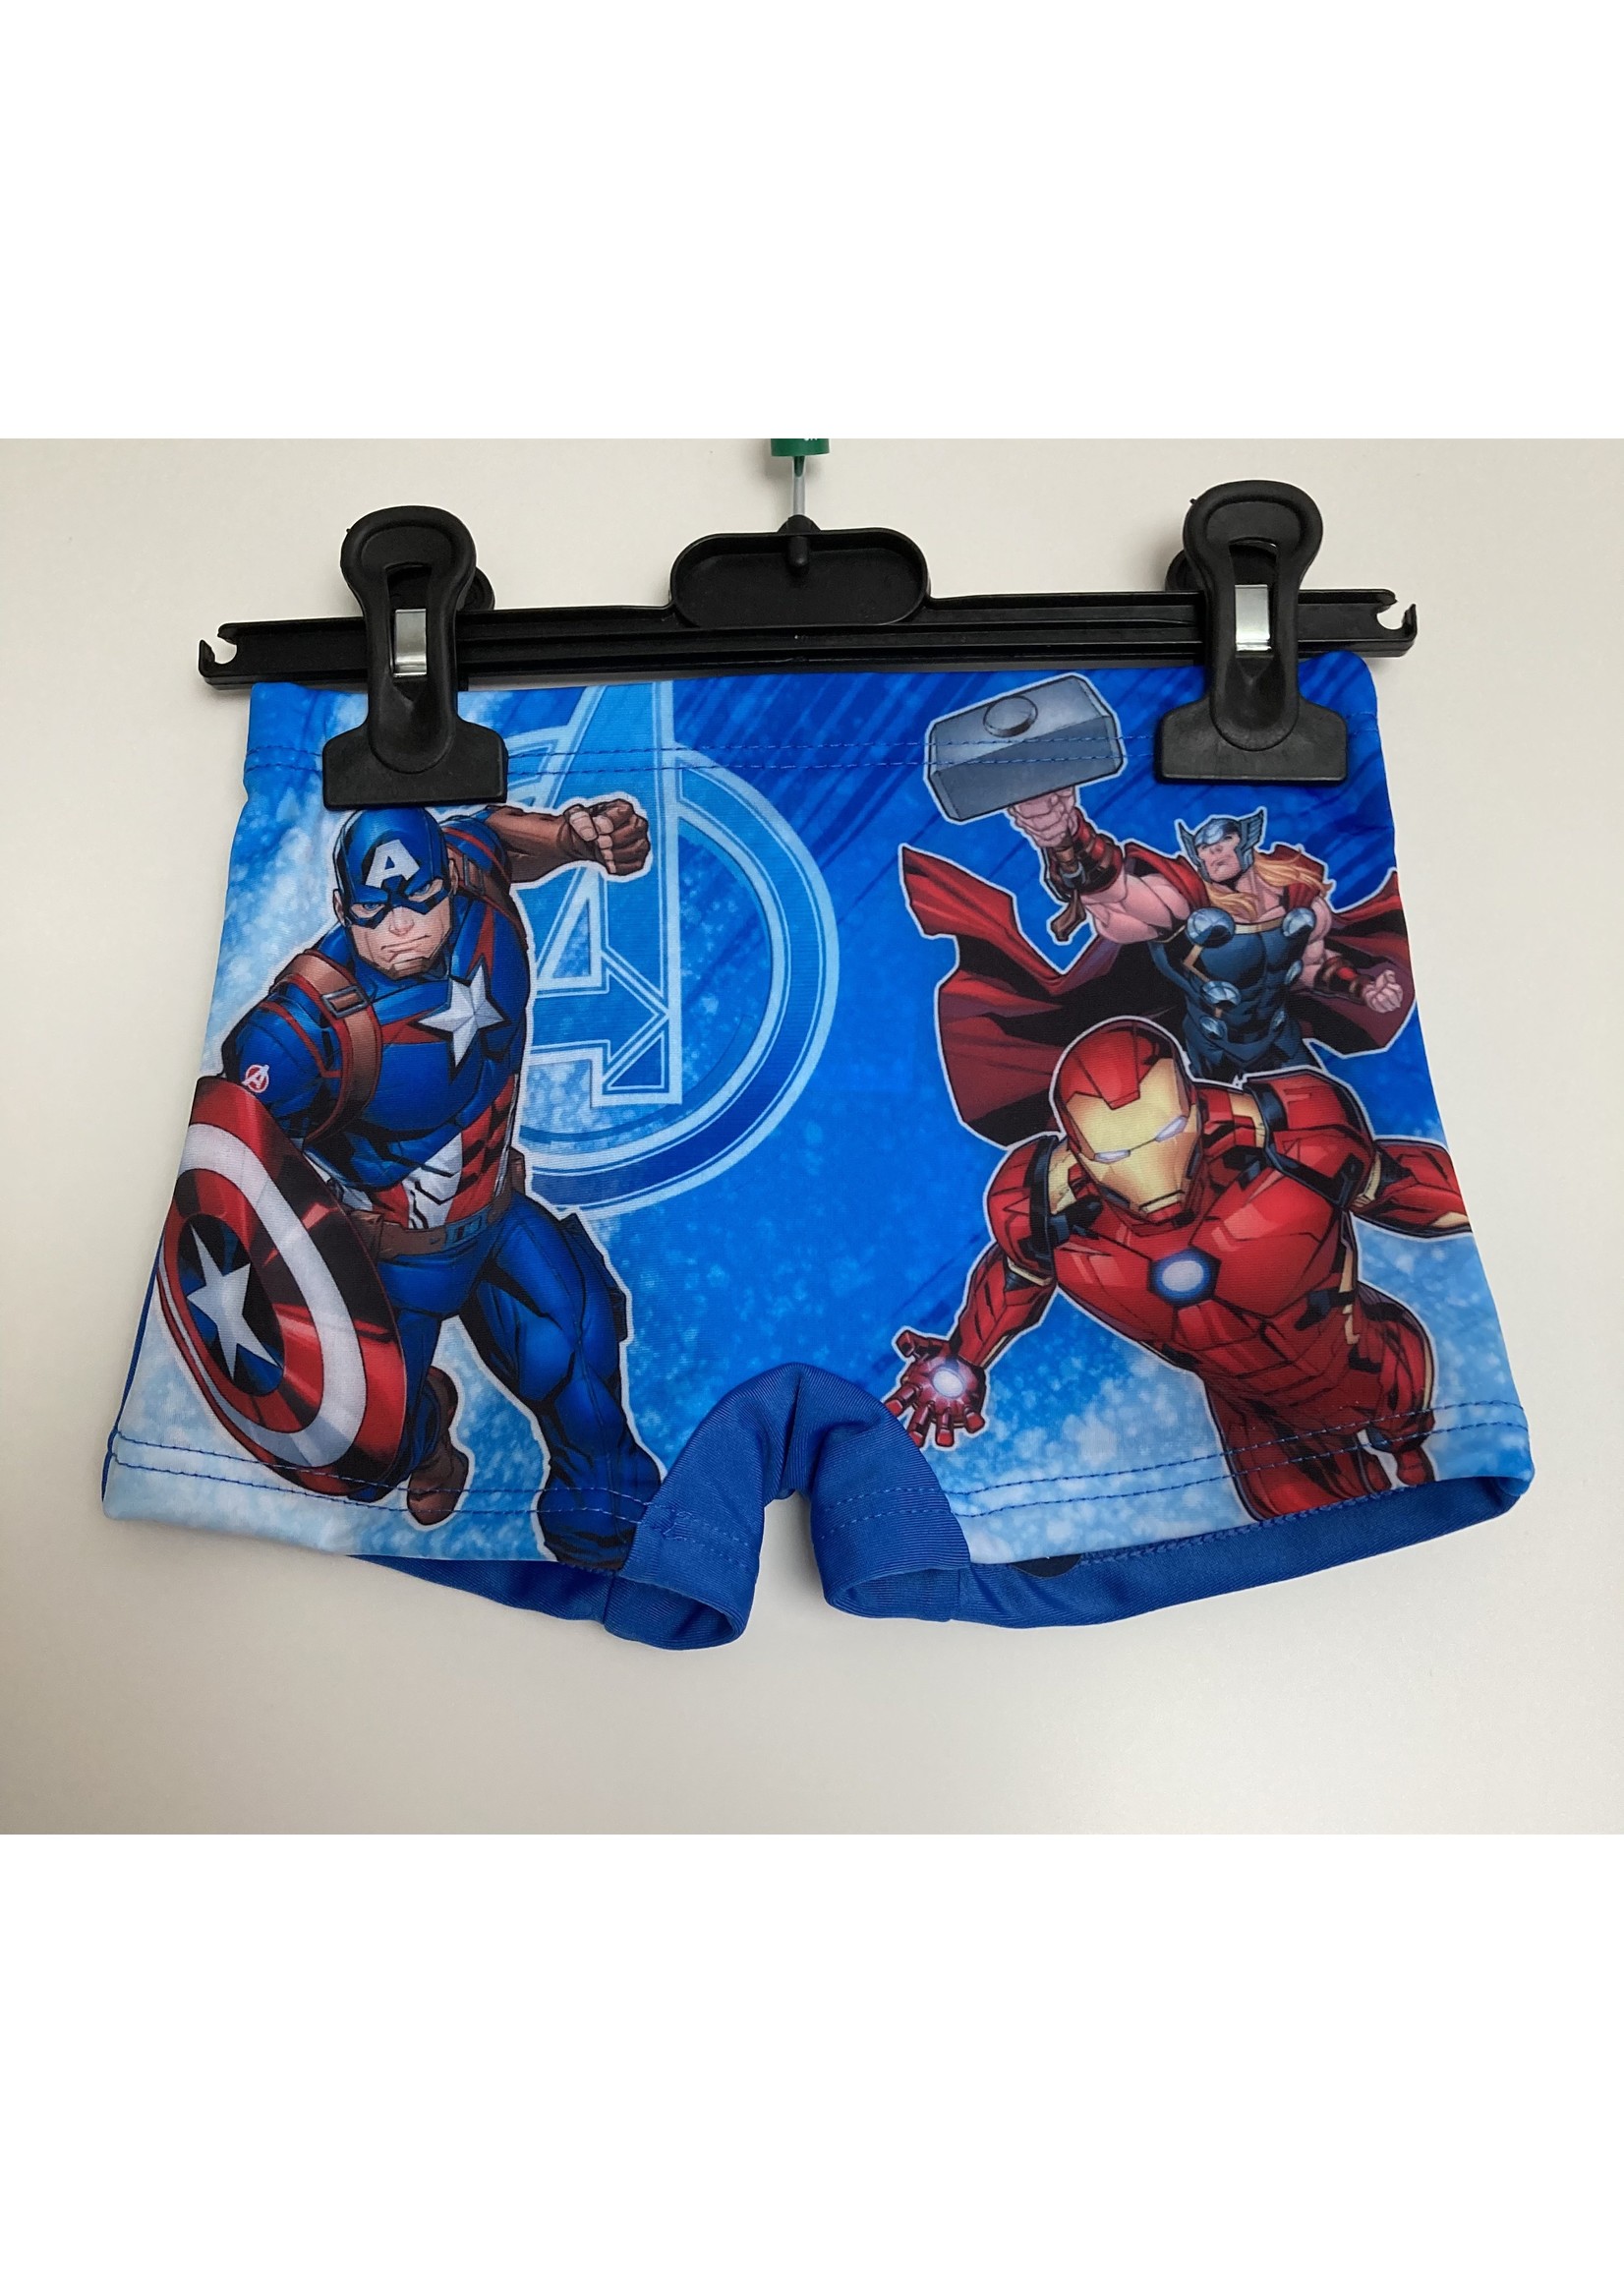 Marvel Avengers swim trunks from Marvel blue